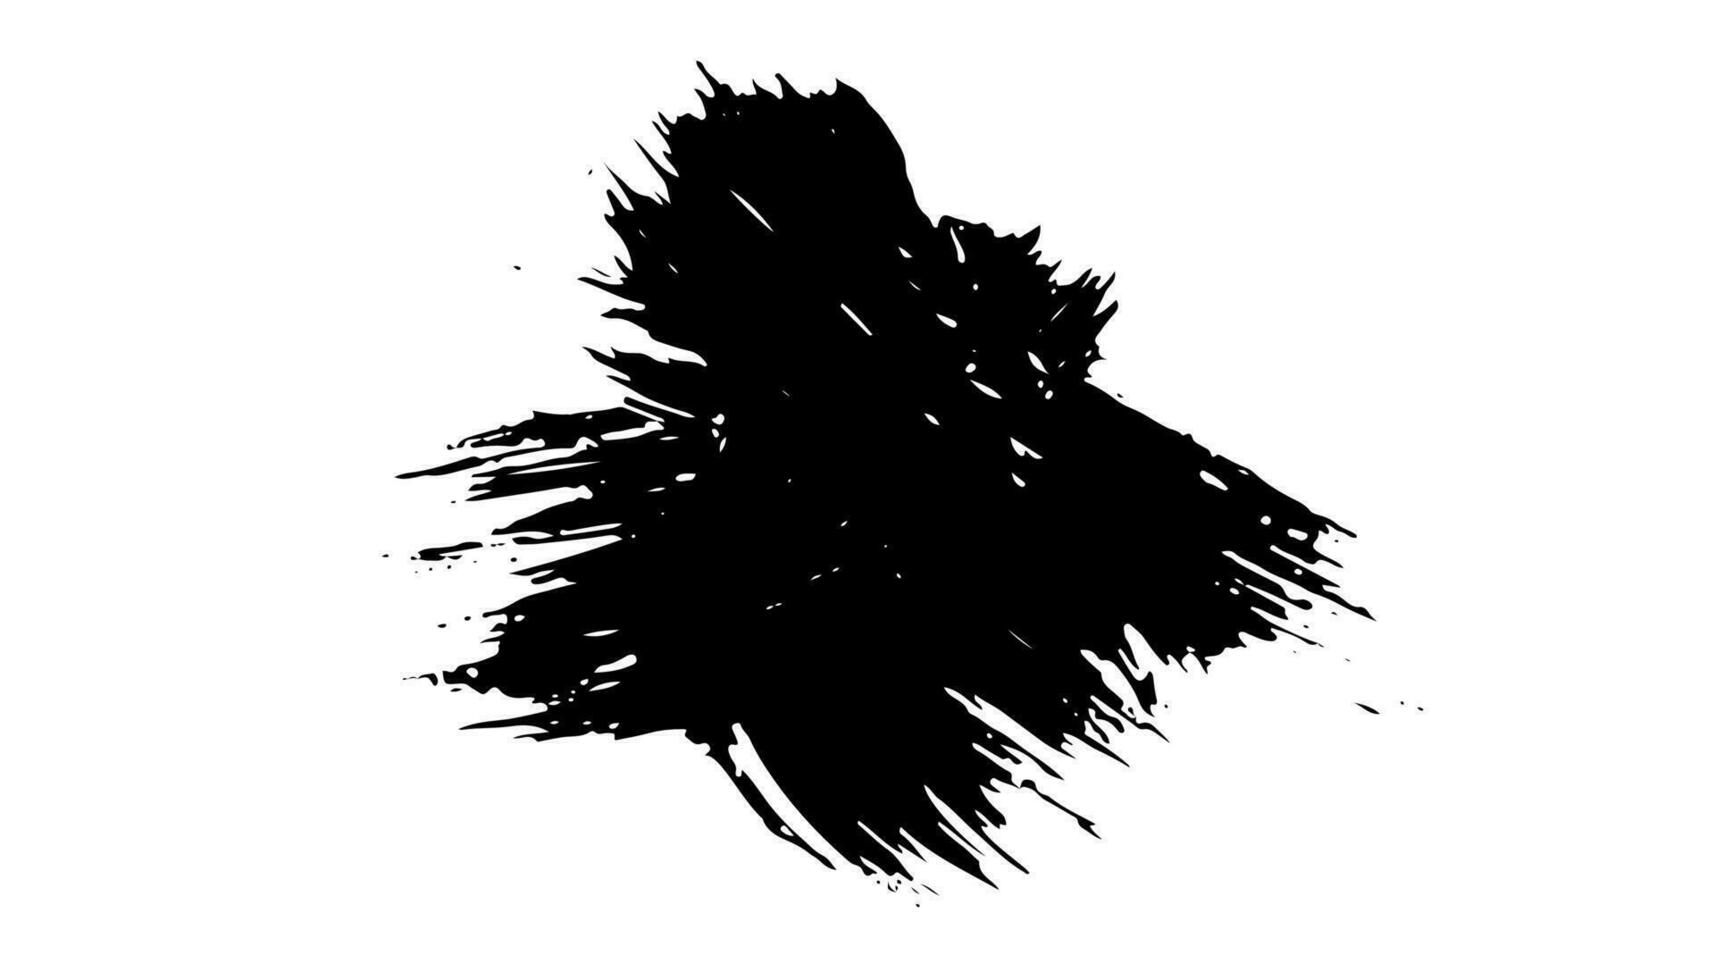 black staine brush, grunge banner, hand drawn splash. Grunge badge brush, hand drawn black vector